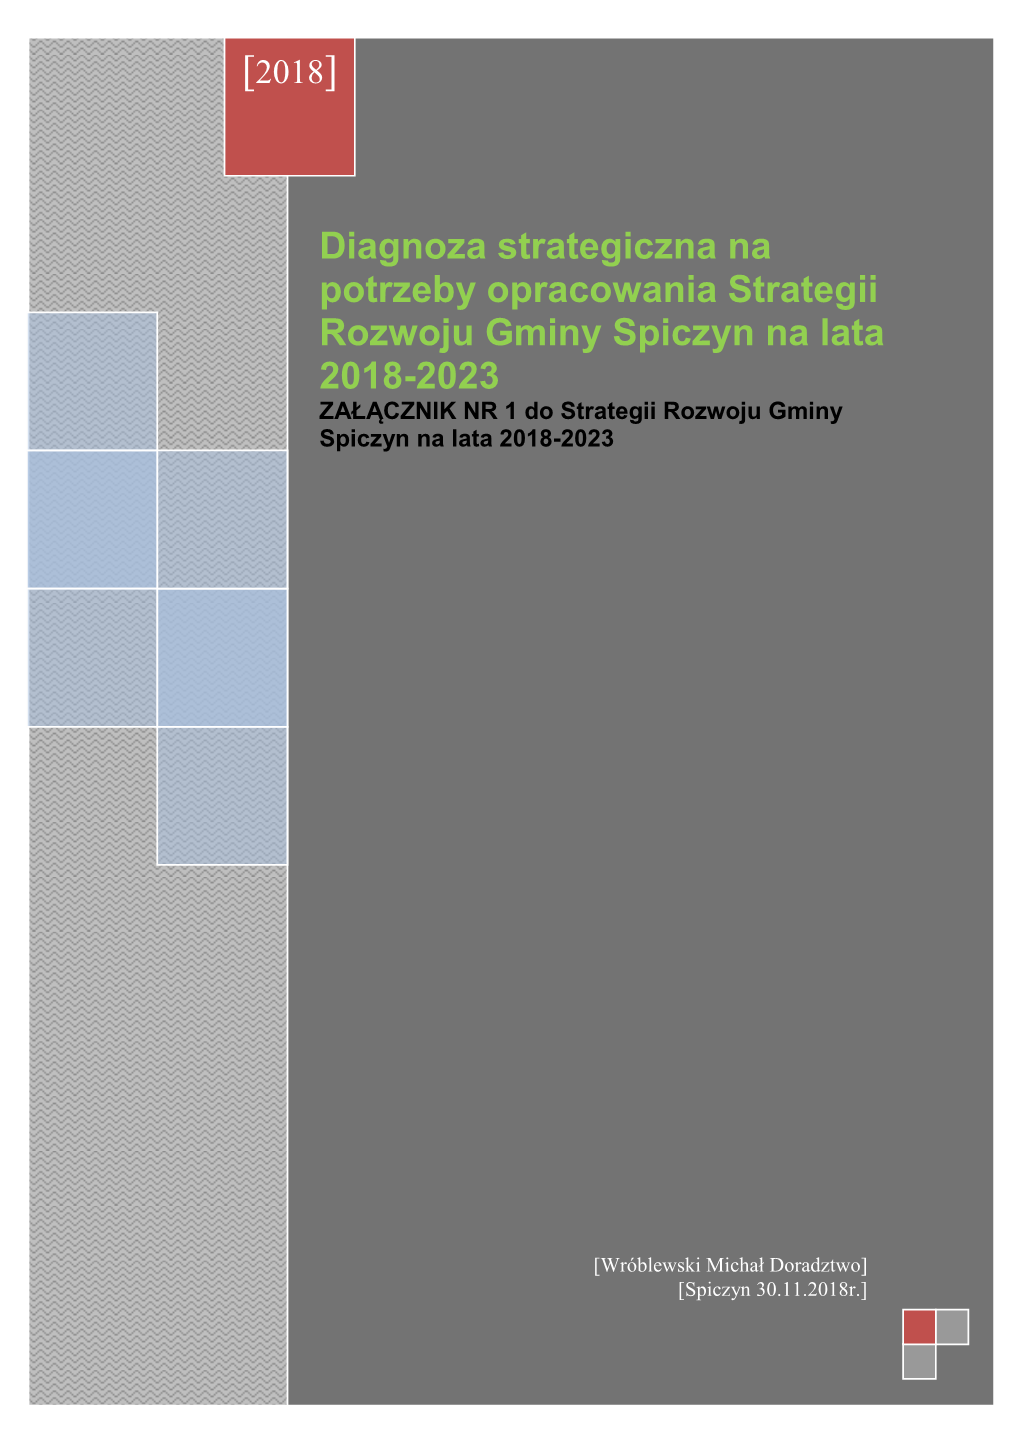 W Diagnoza Strategiczna Na Potrzeby Opracowania Strategii Rozwoju